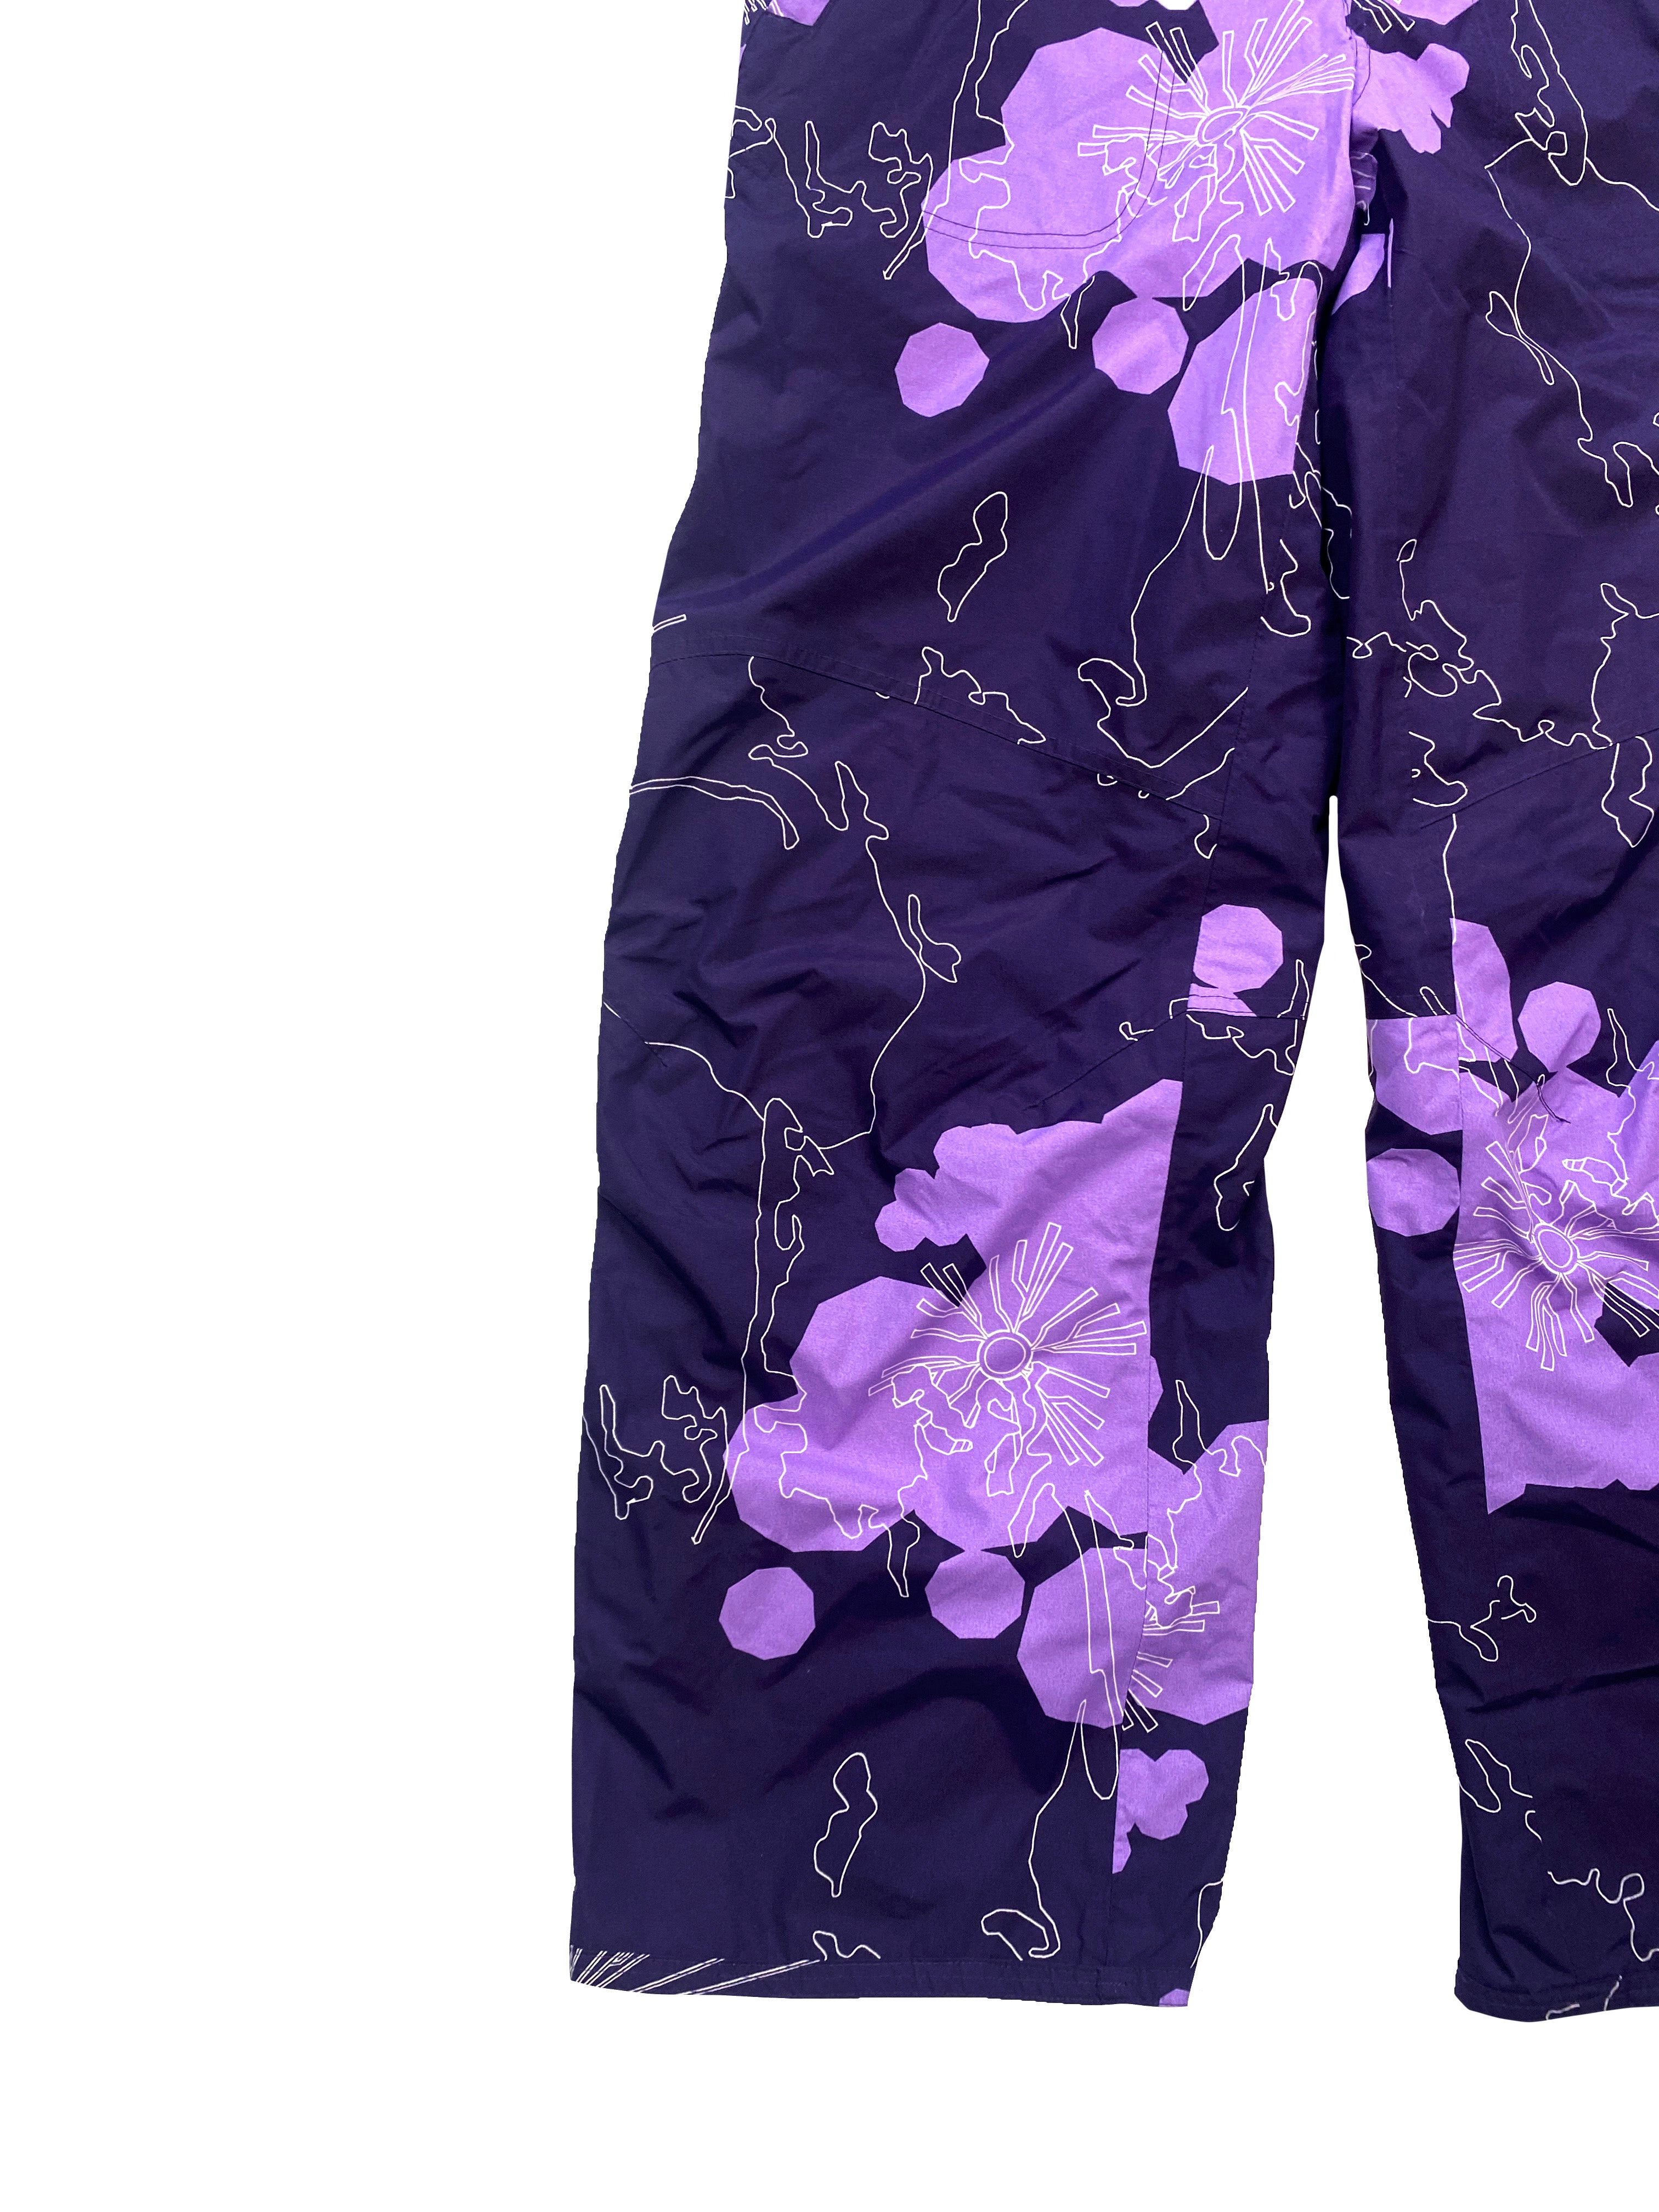 Nike ACG purple patterned trousers BNWT 00's